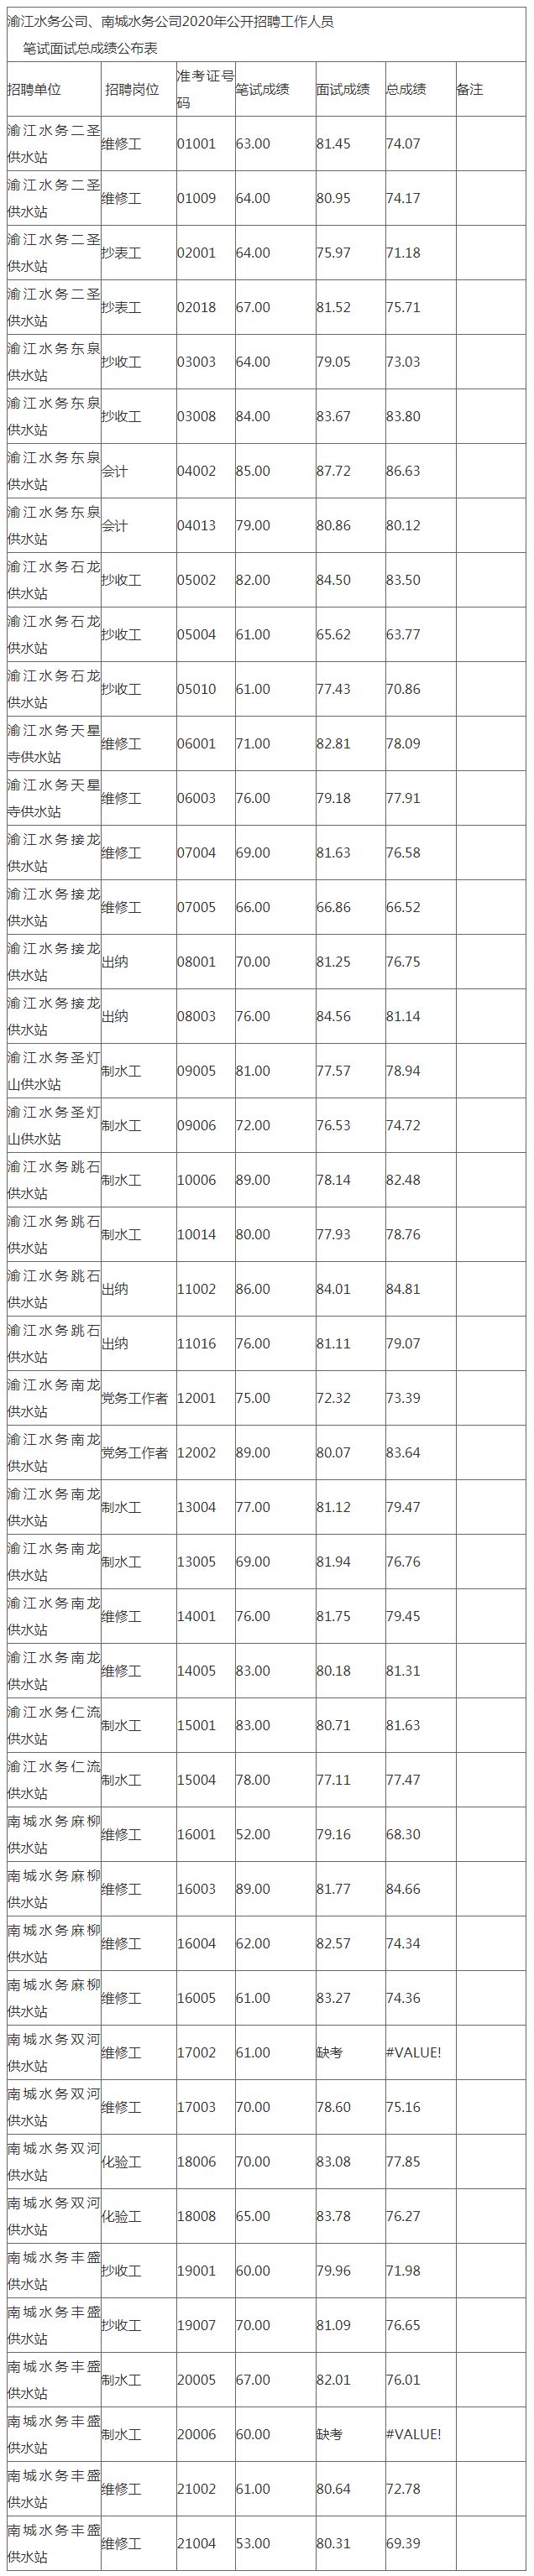 2020年渝江水务公司、南城水务公司招聘笔试面试总成绩公示